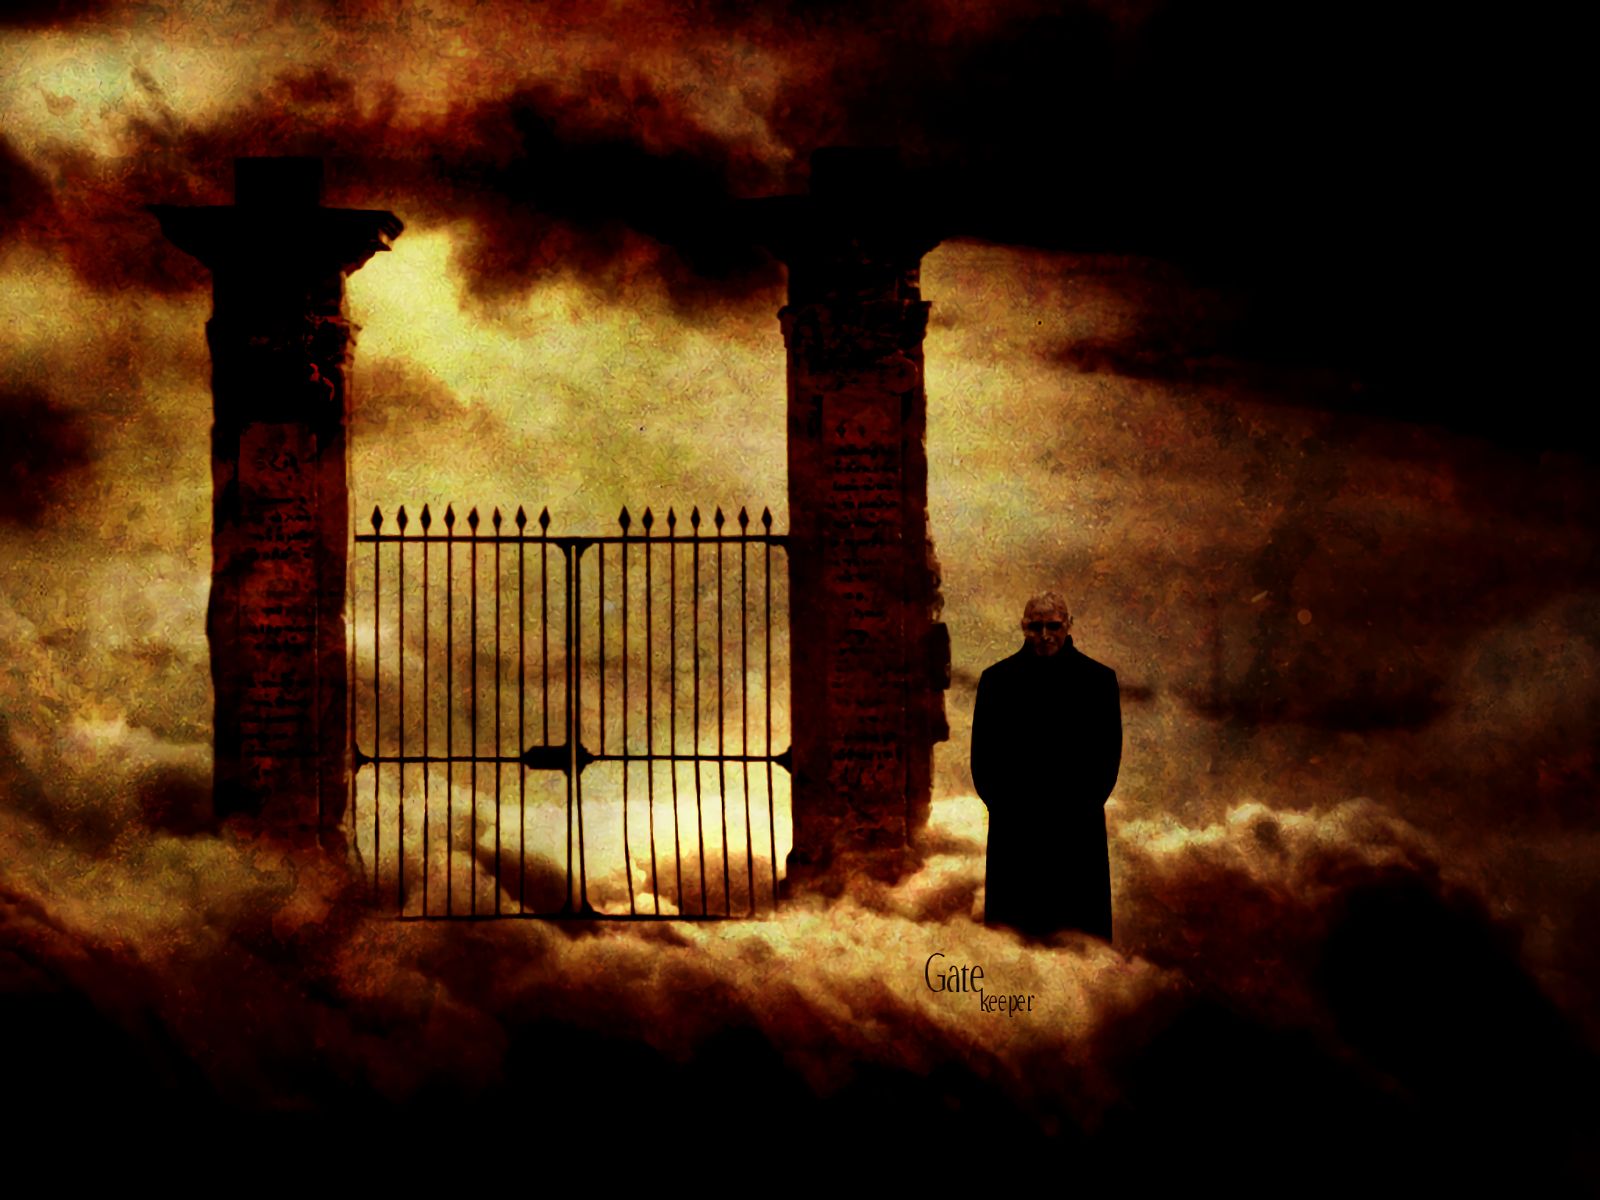 dark, men, gate